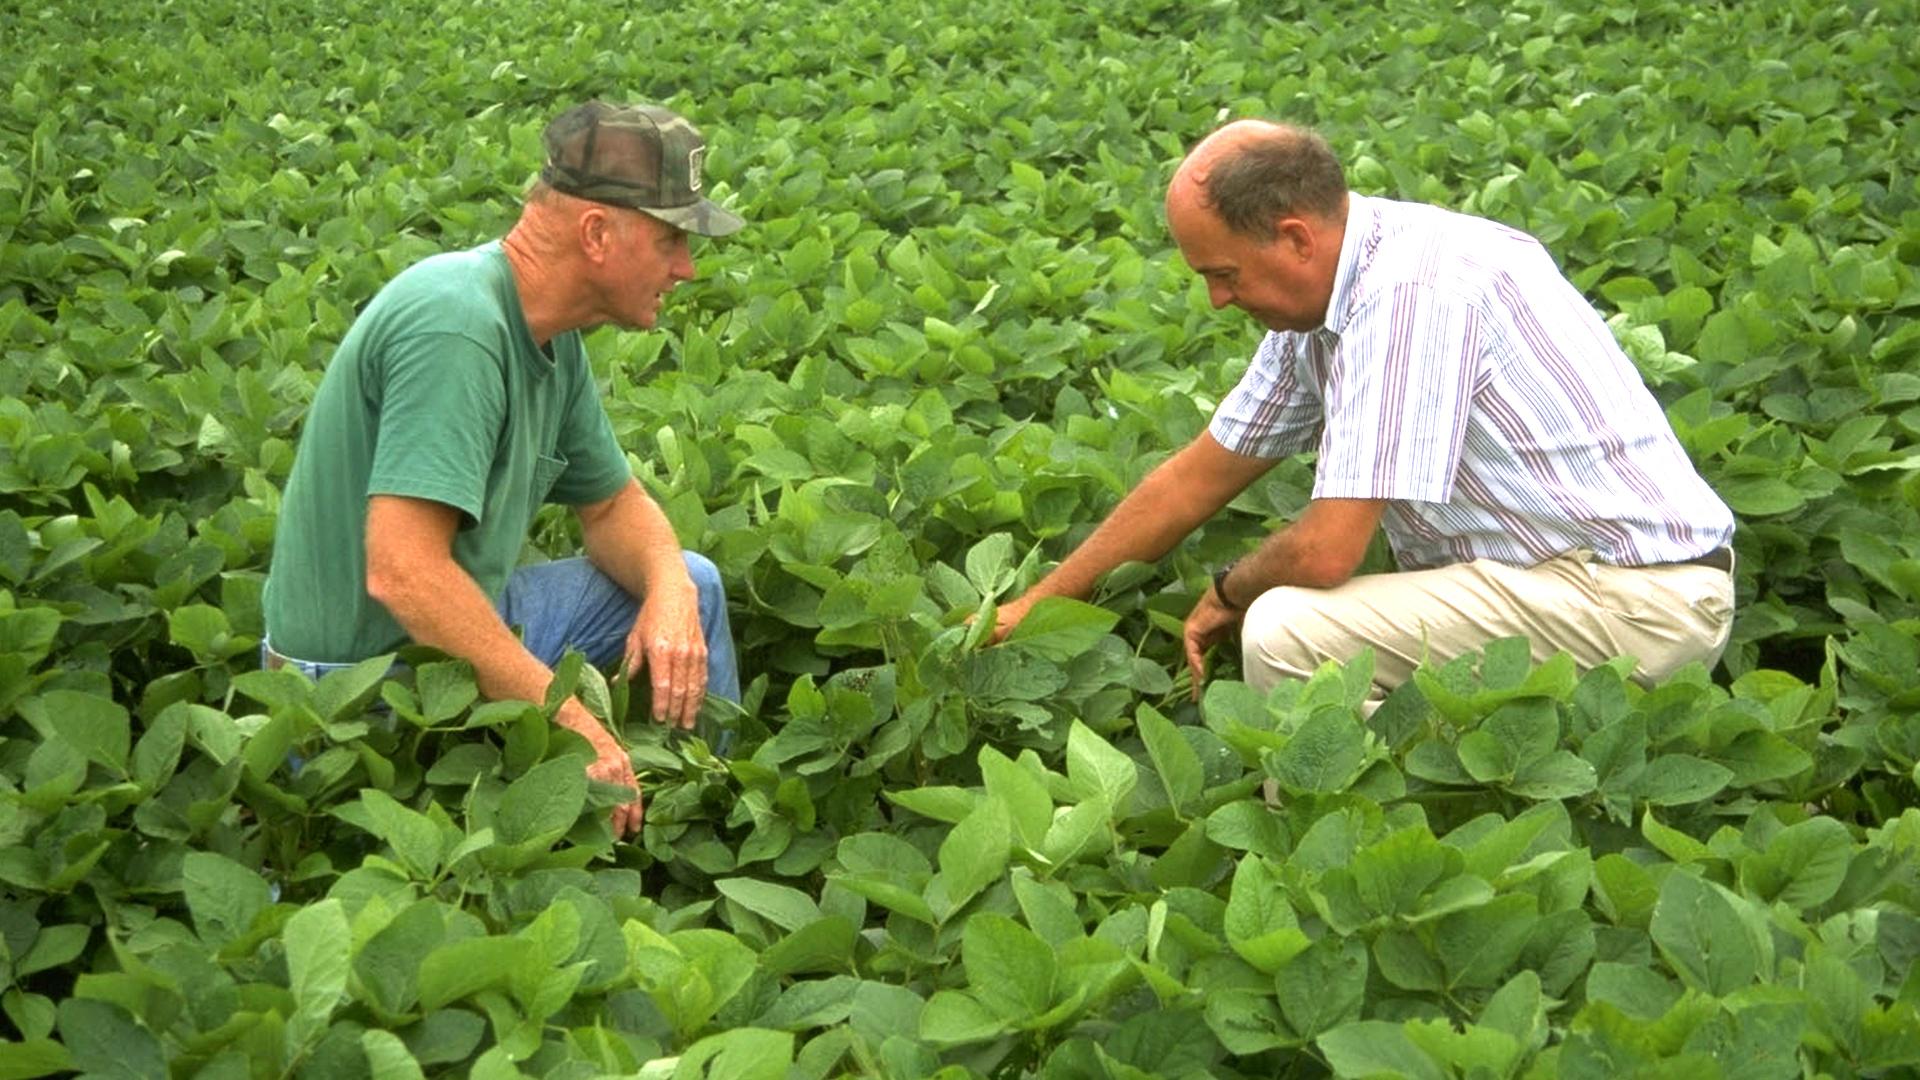 Two farmers kneeling in a green soybean crop field